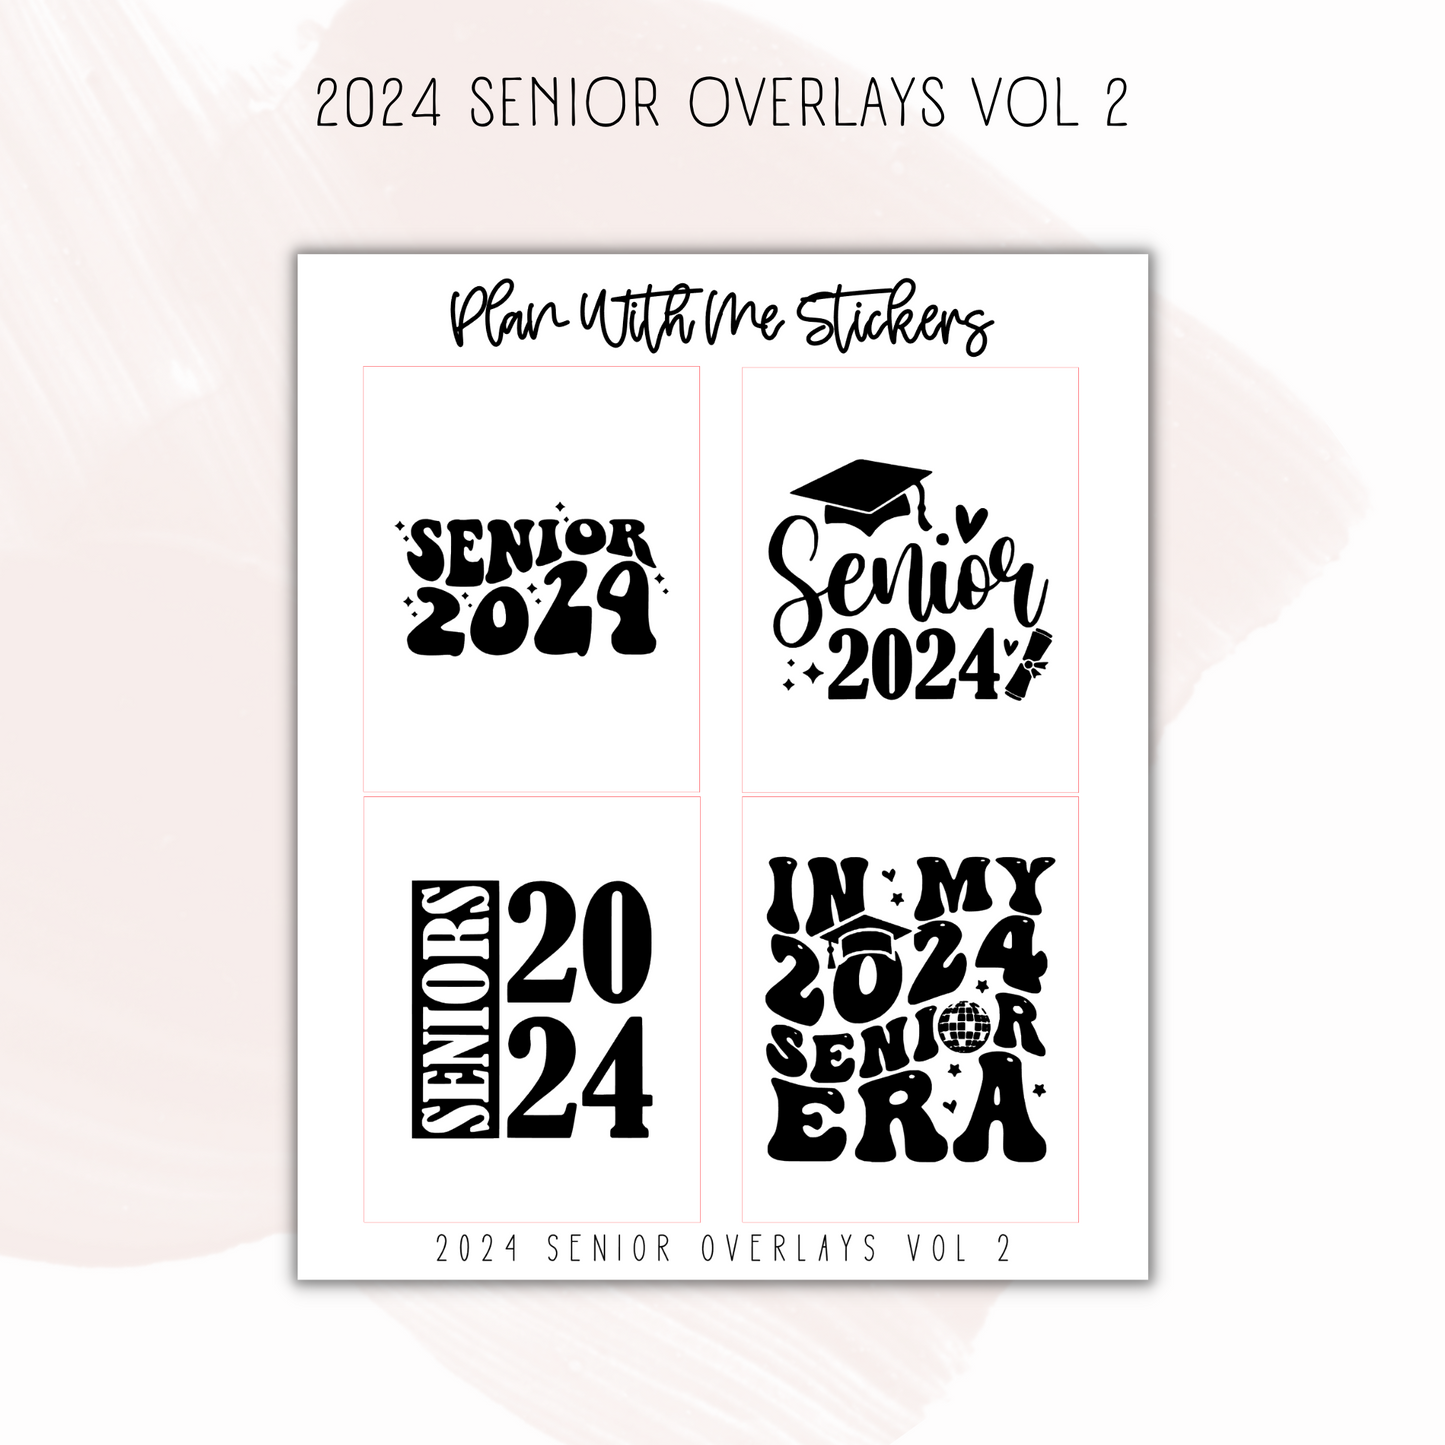 2024 Senior Overlays Vol 2